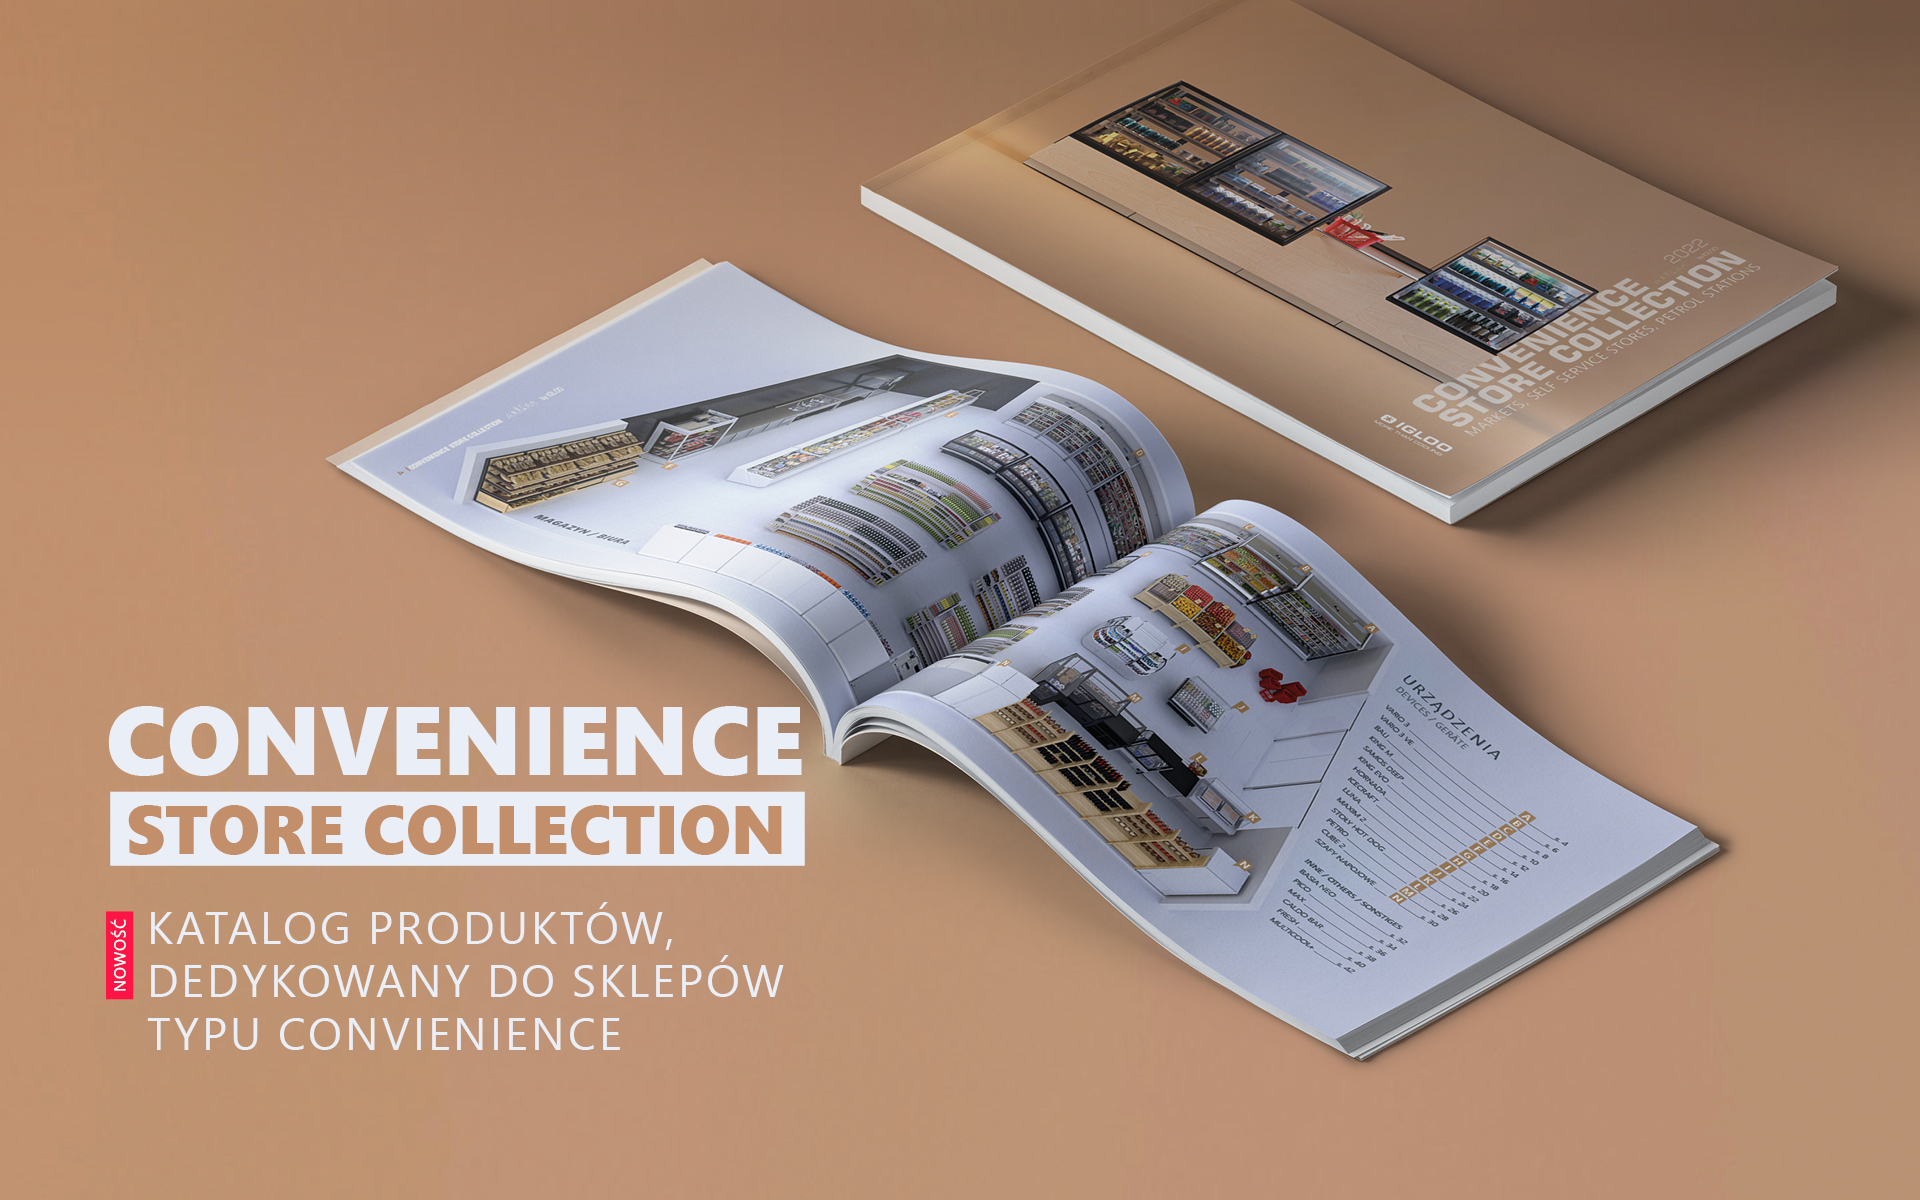 Nous présentons le dernier catalogue de produits, dédié aux magasins de CONVENIENCE.